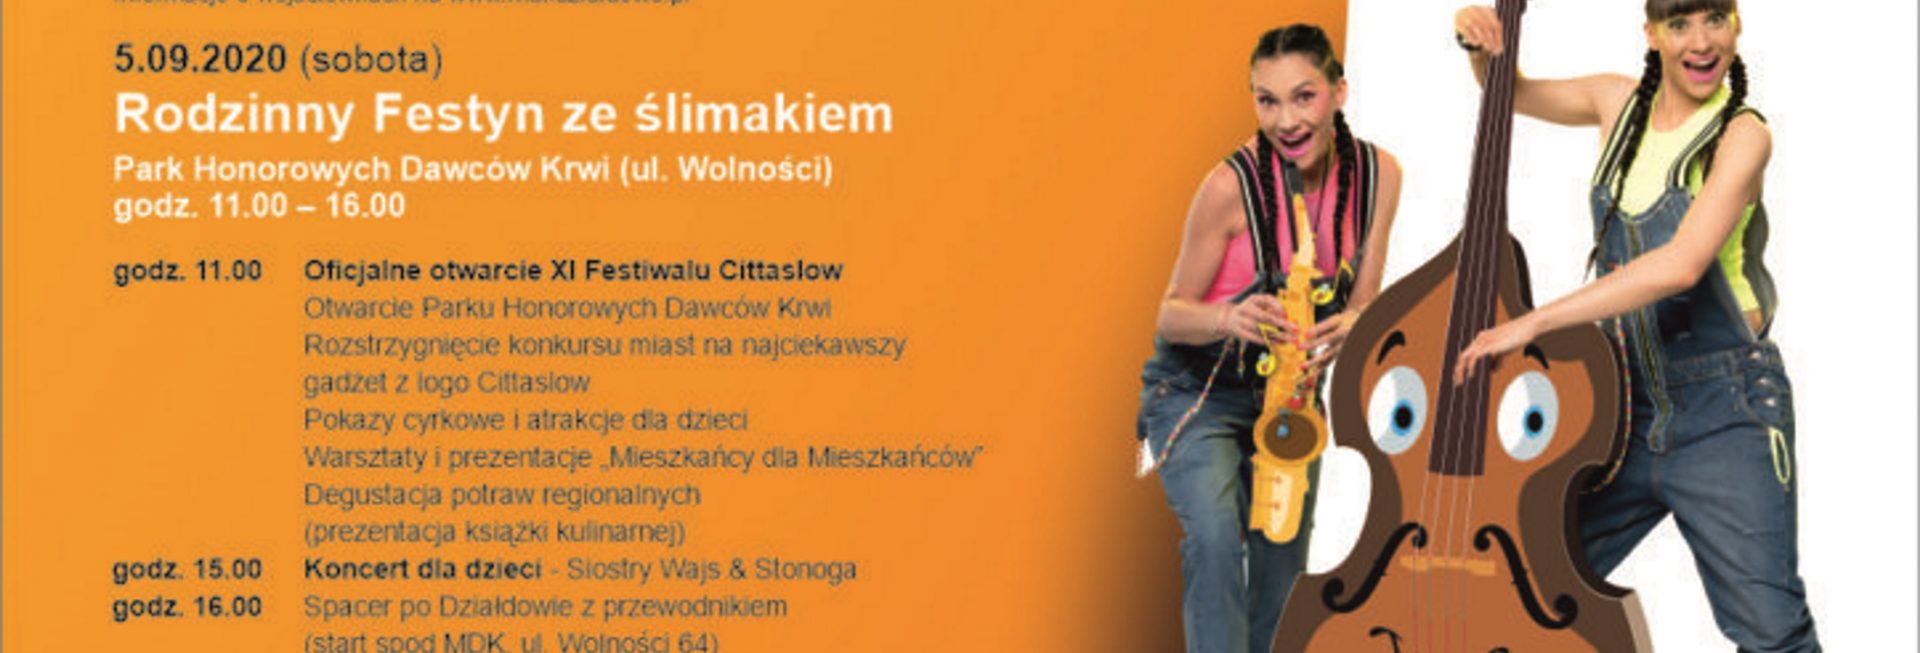 Plakat graficzny zapraszający na XI Ogólnopolski Festiwal Miast Sieci Cittaslow - Działdowo 2020. Na plakacie szczegółowy program imprezy oraz zdjęcie zespołu Wajs Stonoga dwóch sióstr.    